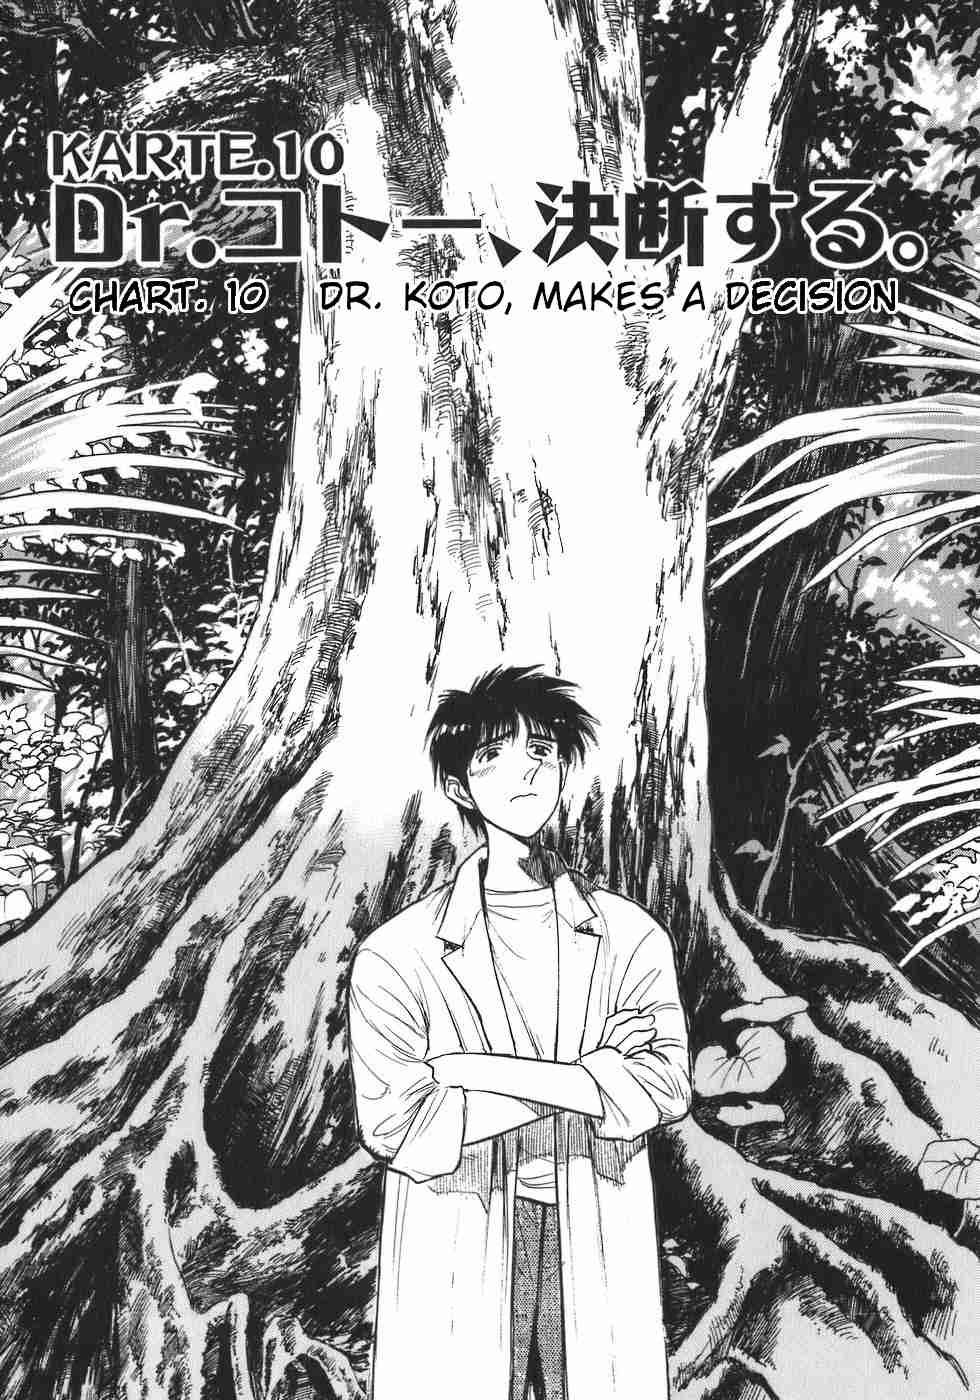 Dr. Koto Shinryoujo Vol. 1 Ch. 10 Dr. Koto Makes a Decision